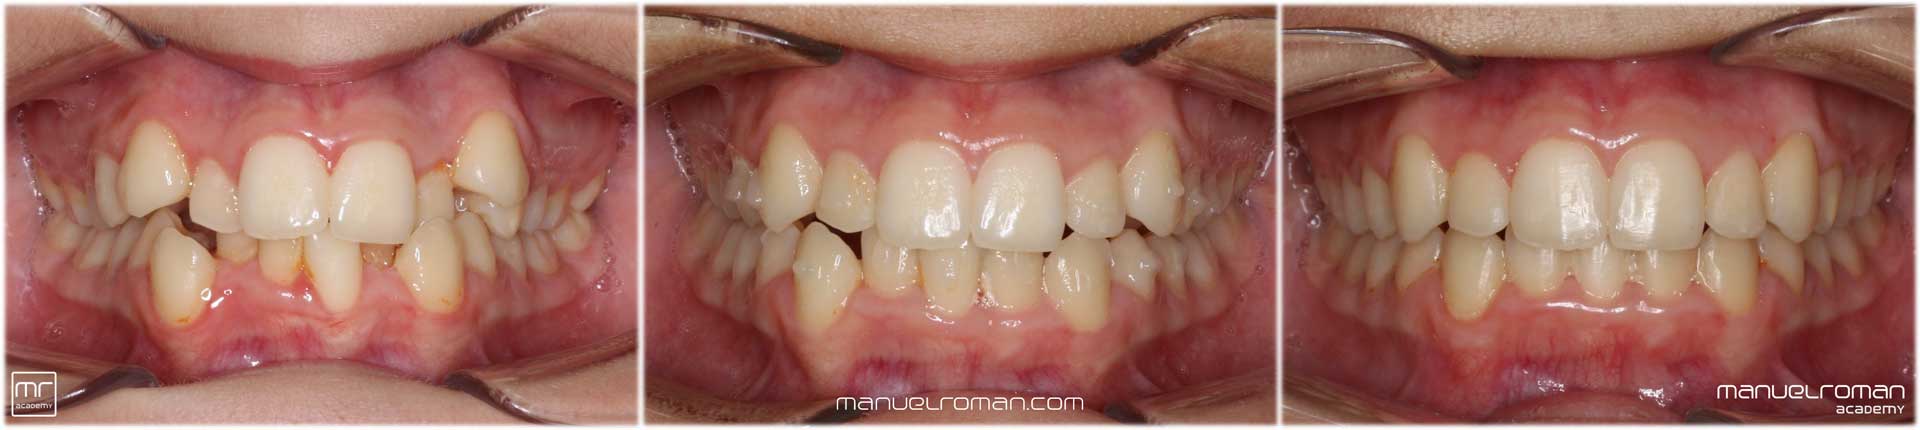 Experto extracciones ortodoncia